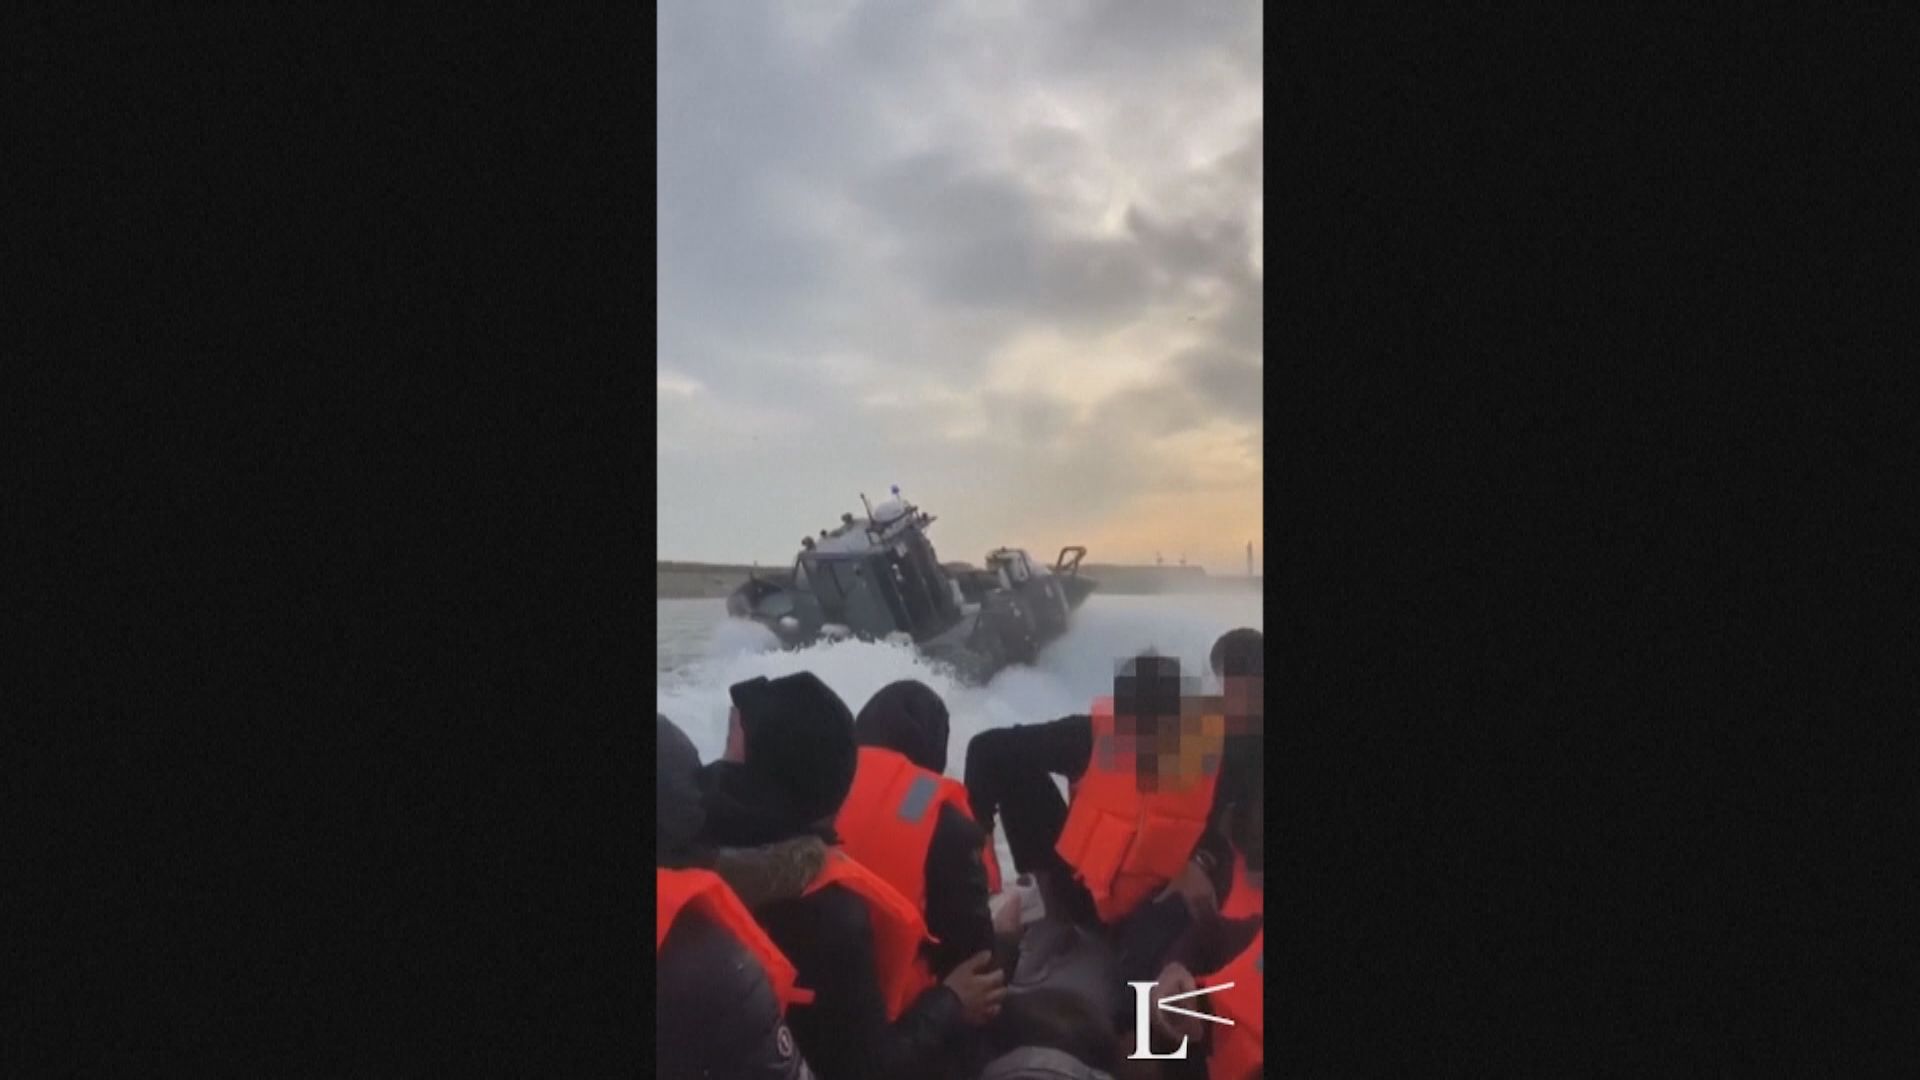 法國海警被指危險攔截載有非法移民船隻